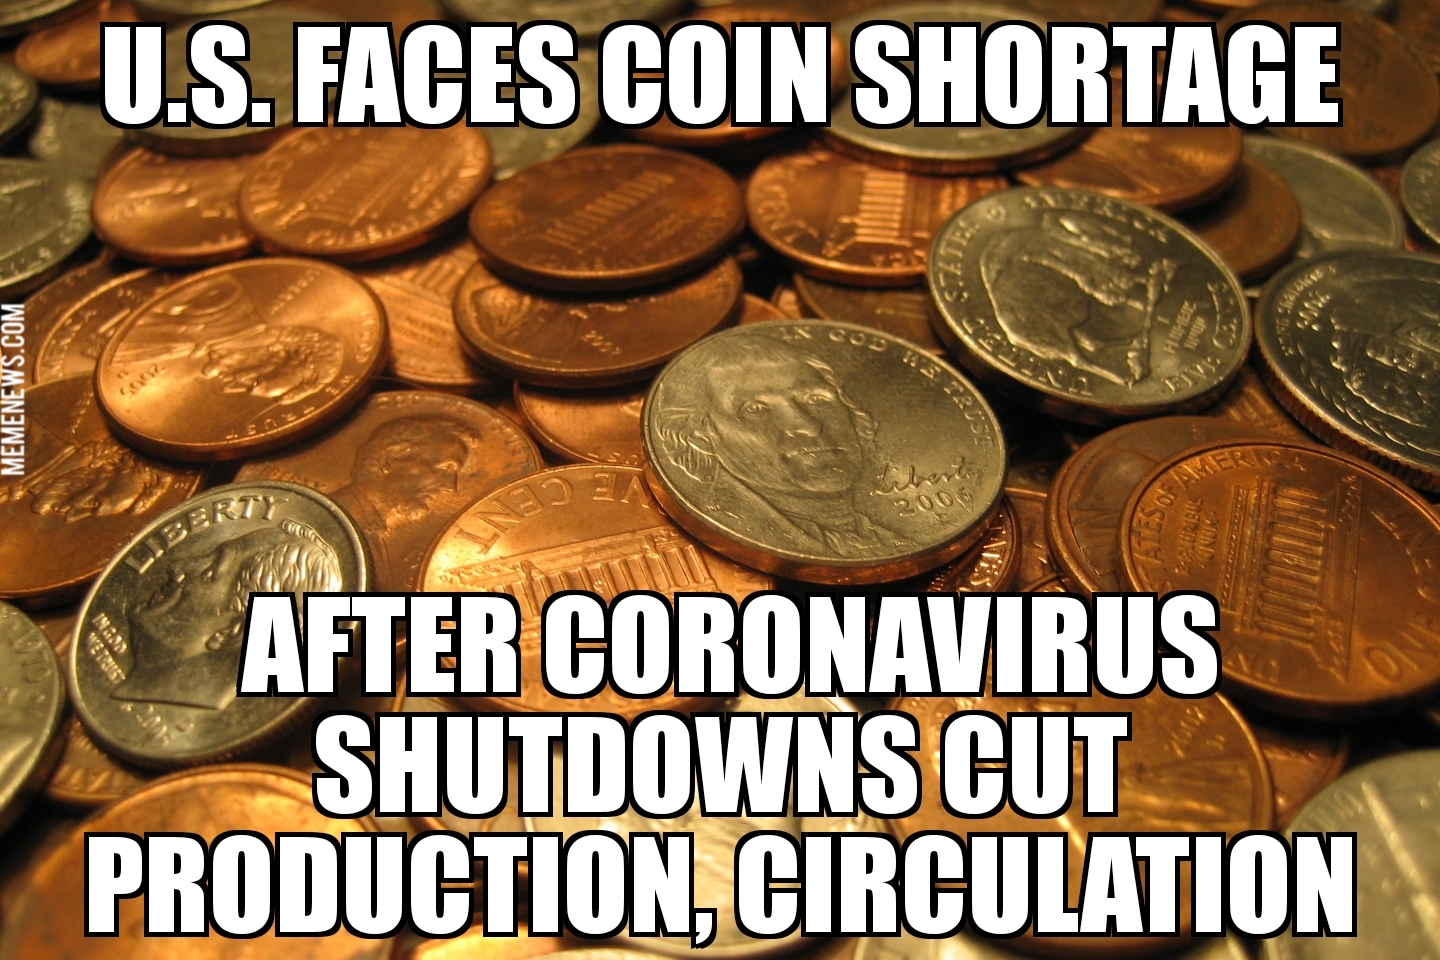 U.S. faces coin shortage